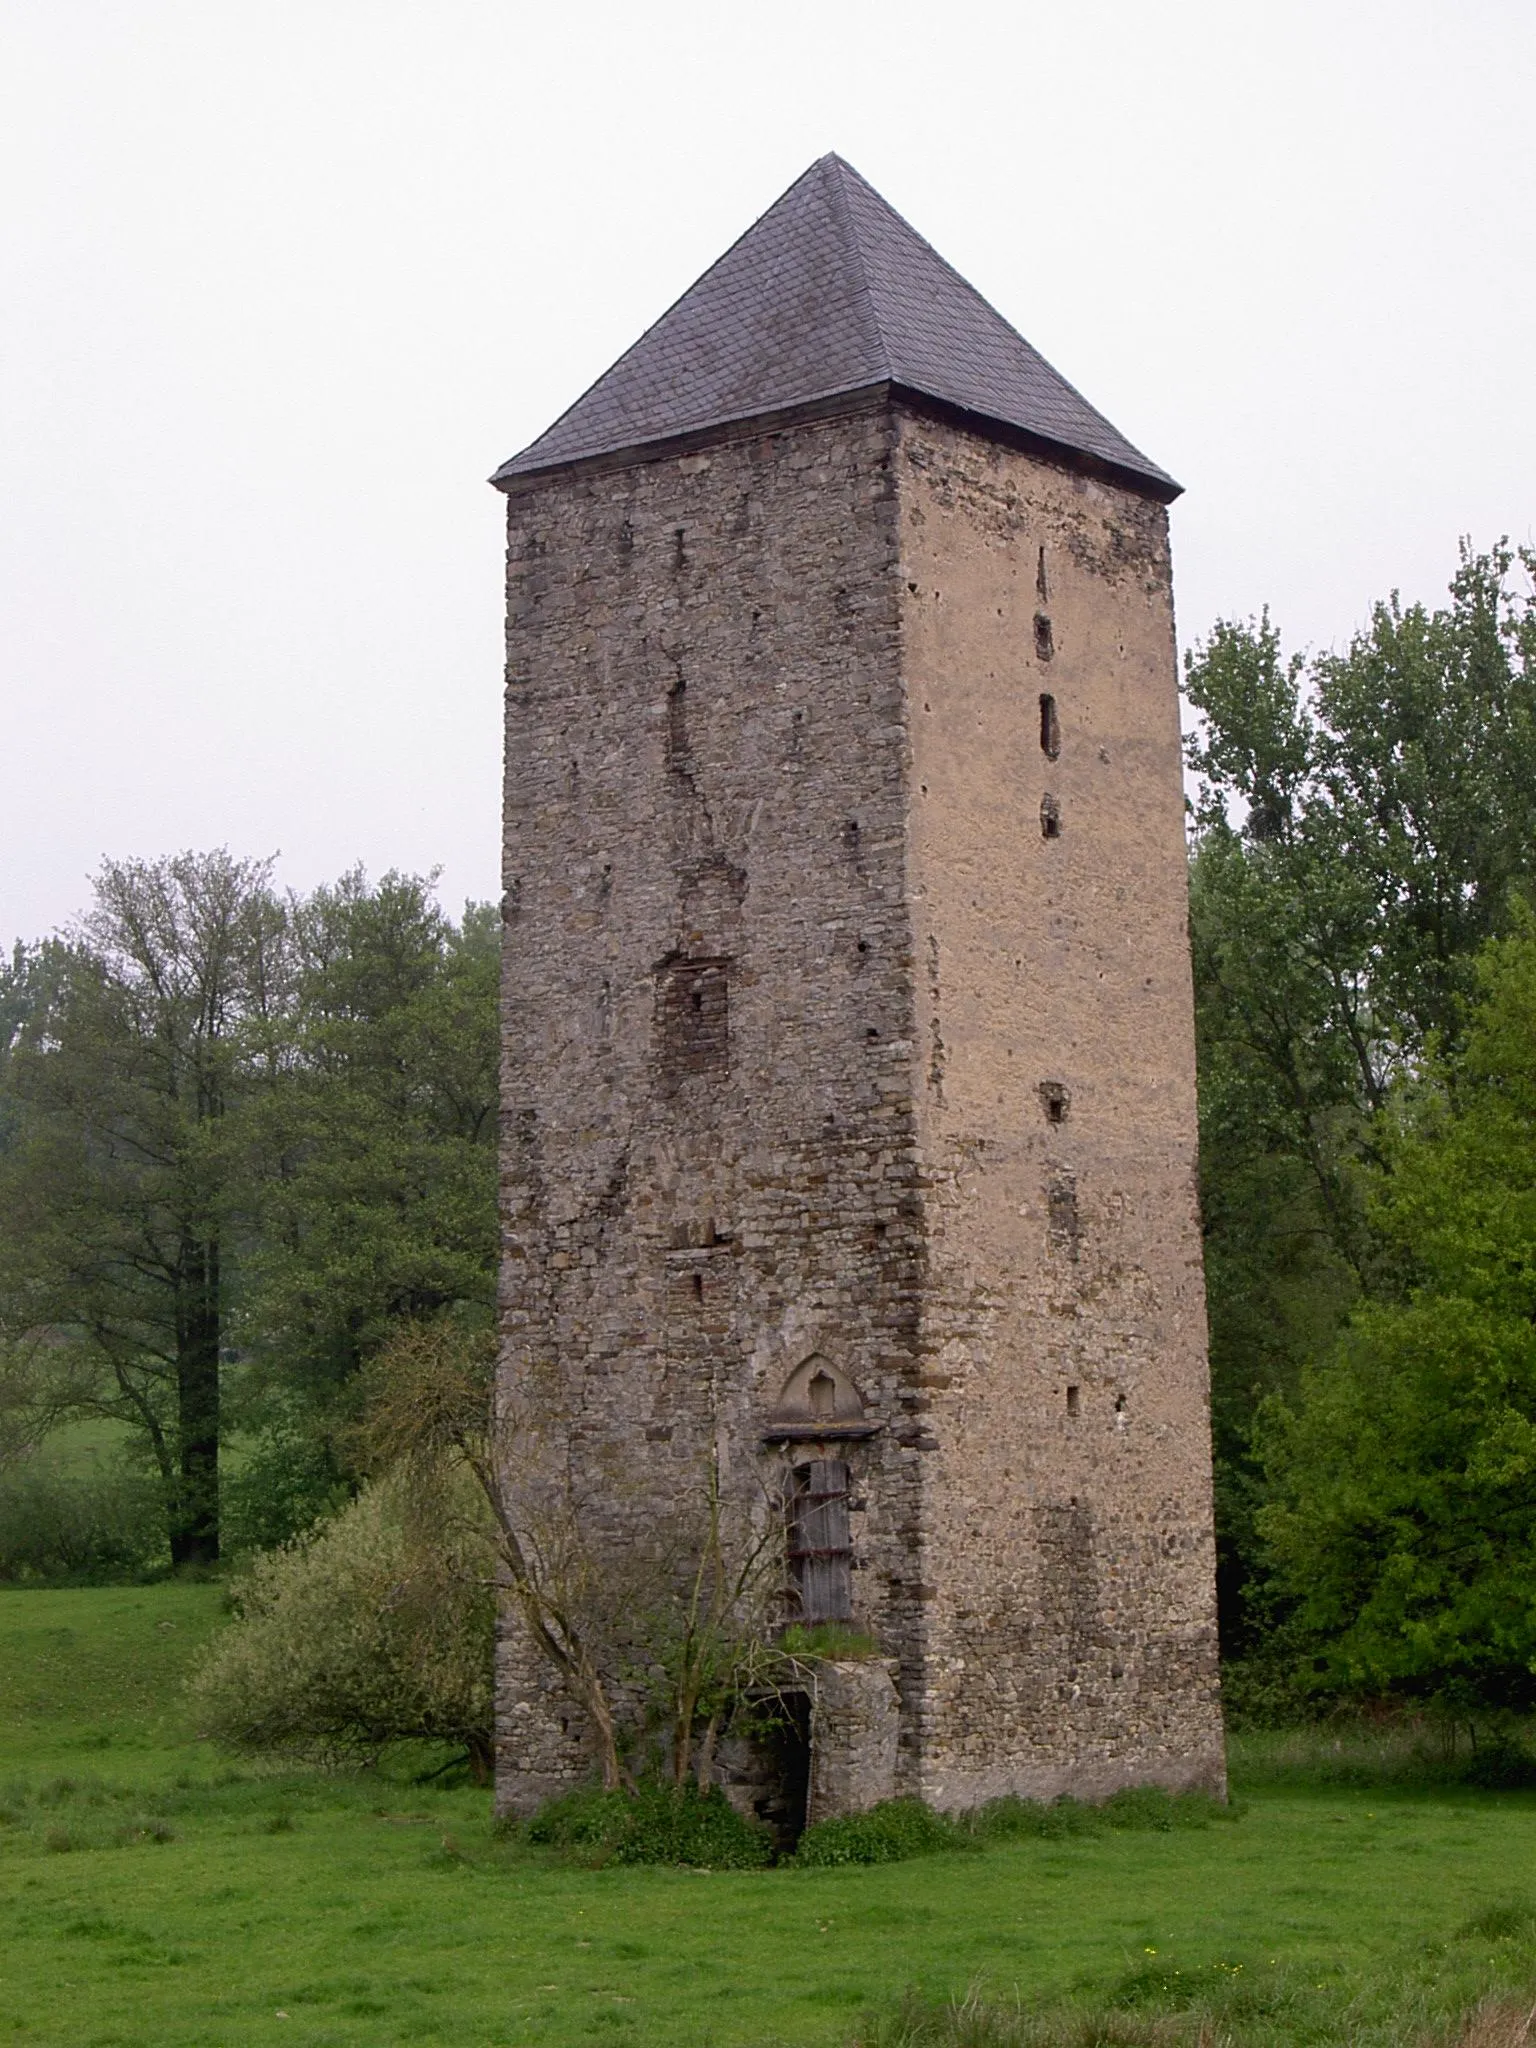 Photo showing: Ehemaliger Fluchtturm des Schlosses Mühlenbach bei Koblenz aus dem 13. Jahrhundert.